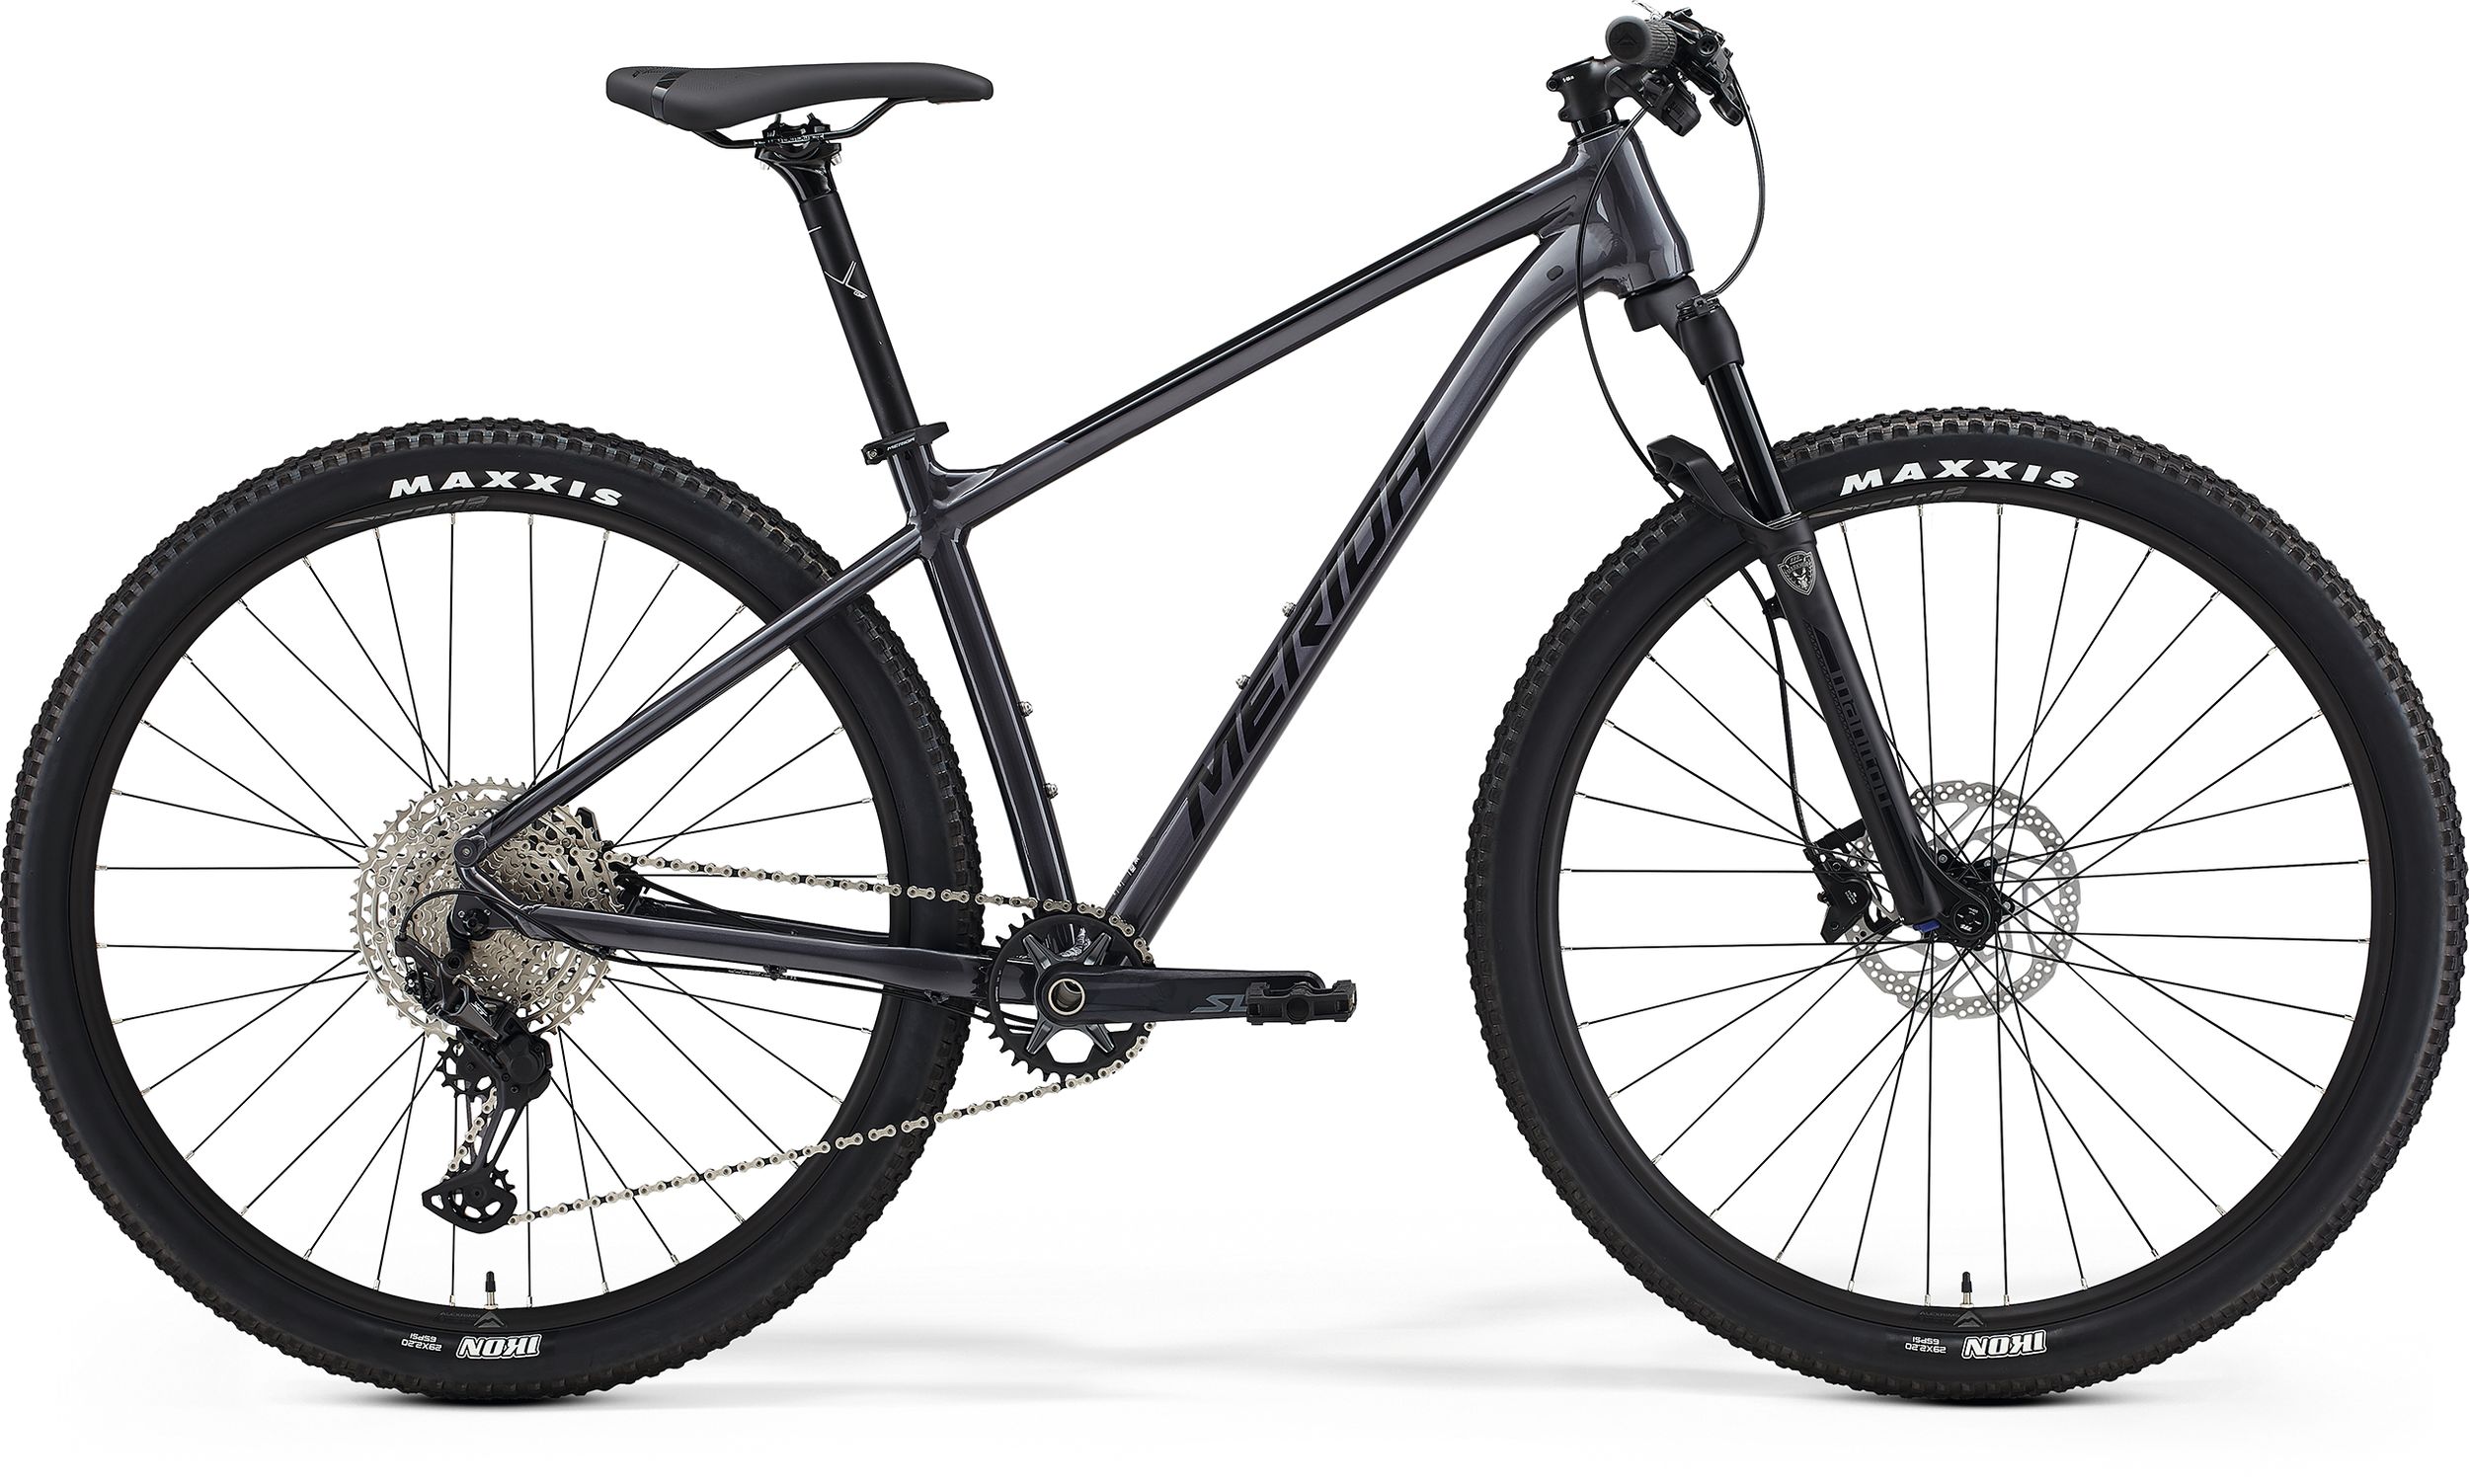 Велосипед Merida Big.Nine SLX-Edition (2021)